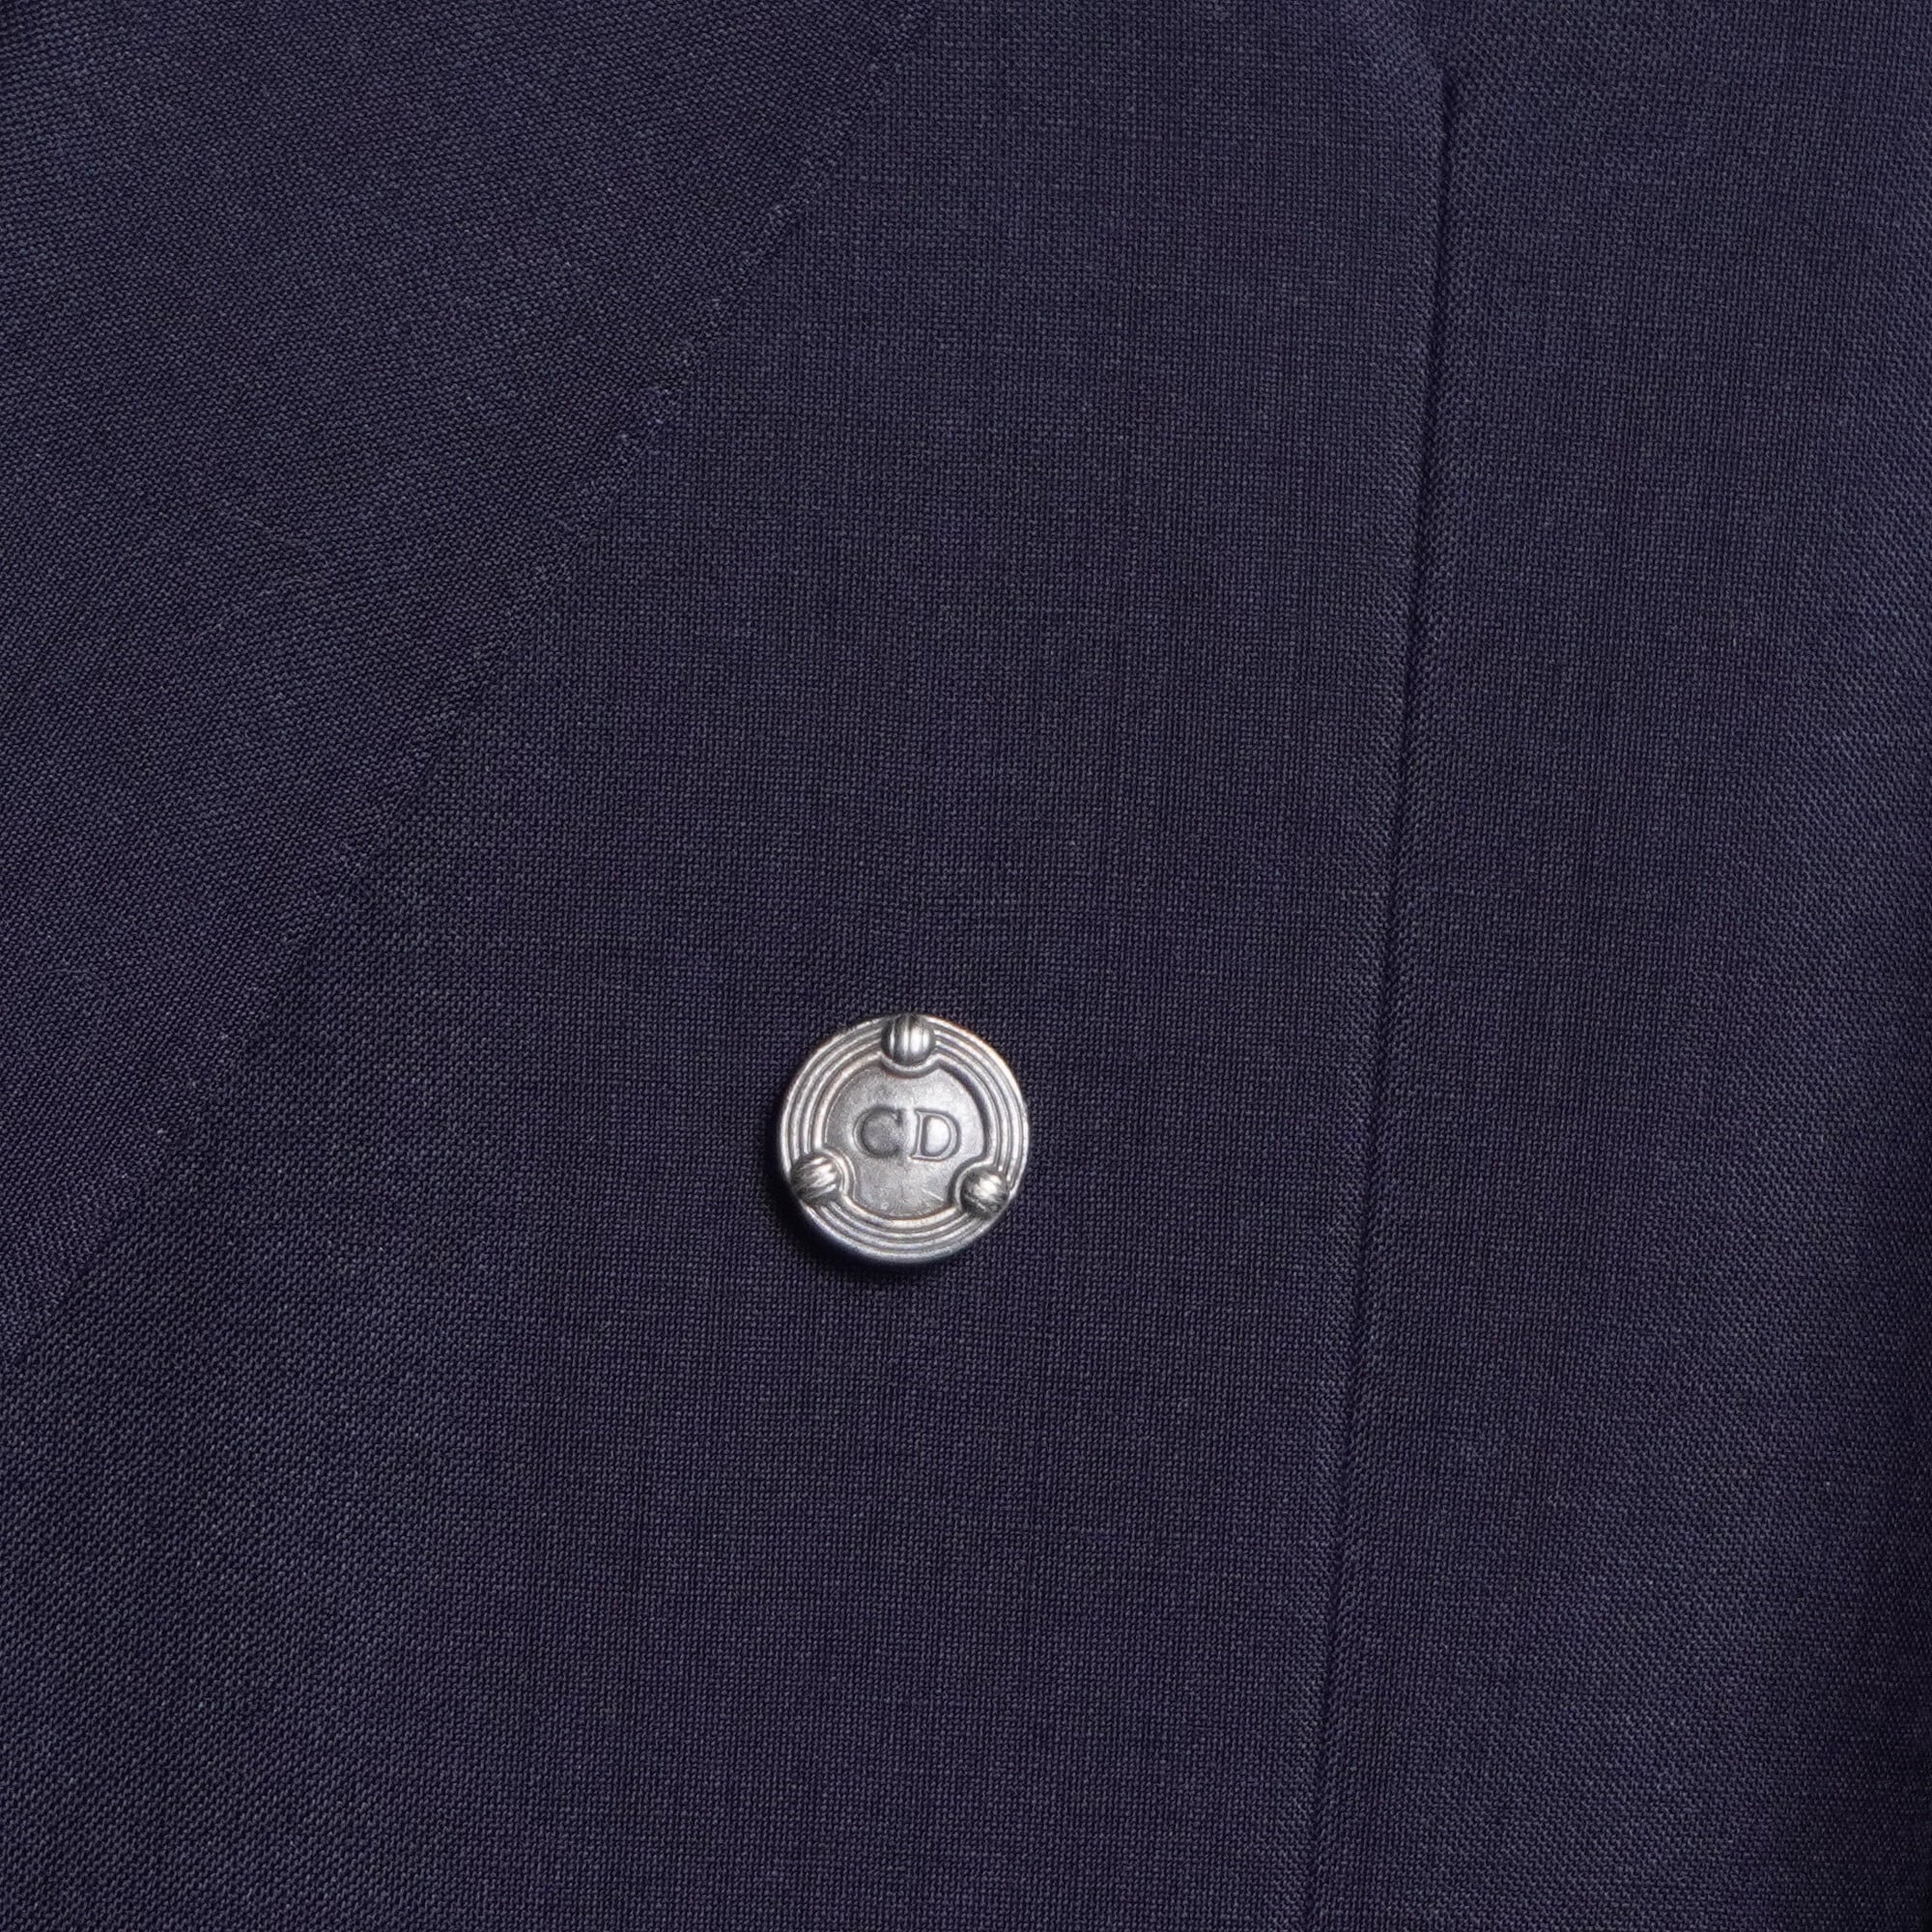 Christian dior】クリスチャンディオール ロゴデザインメタルボタン